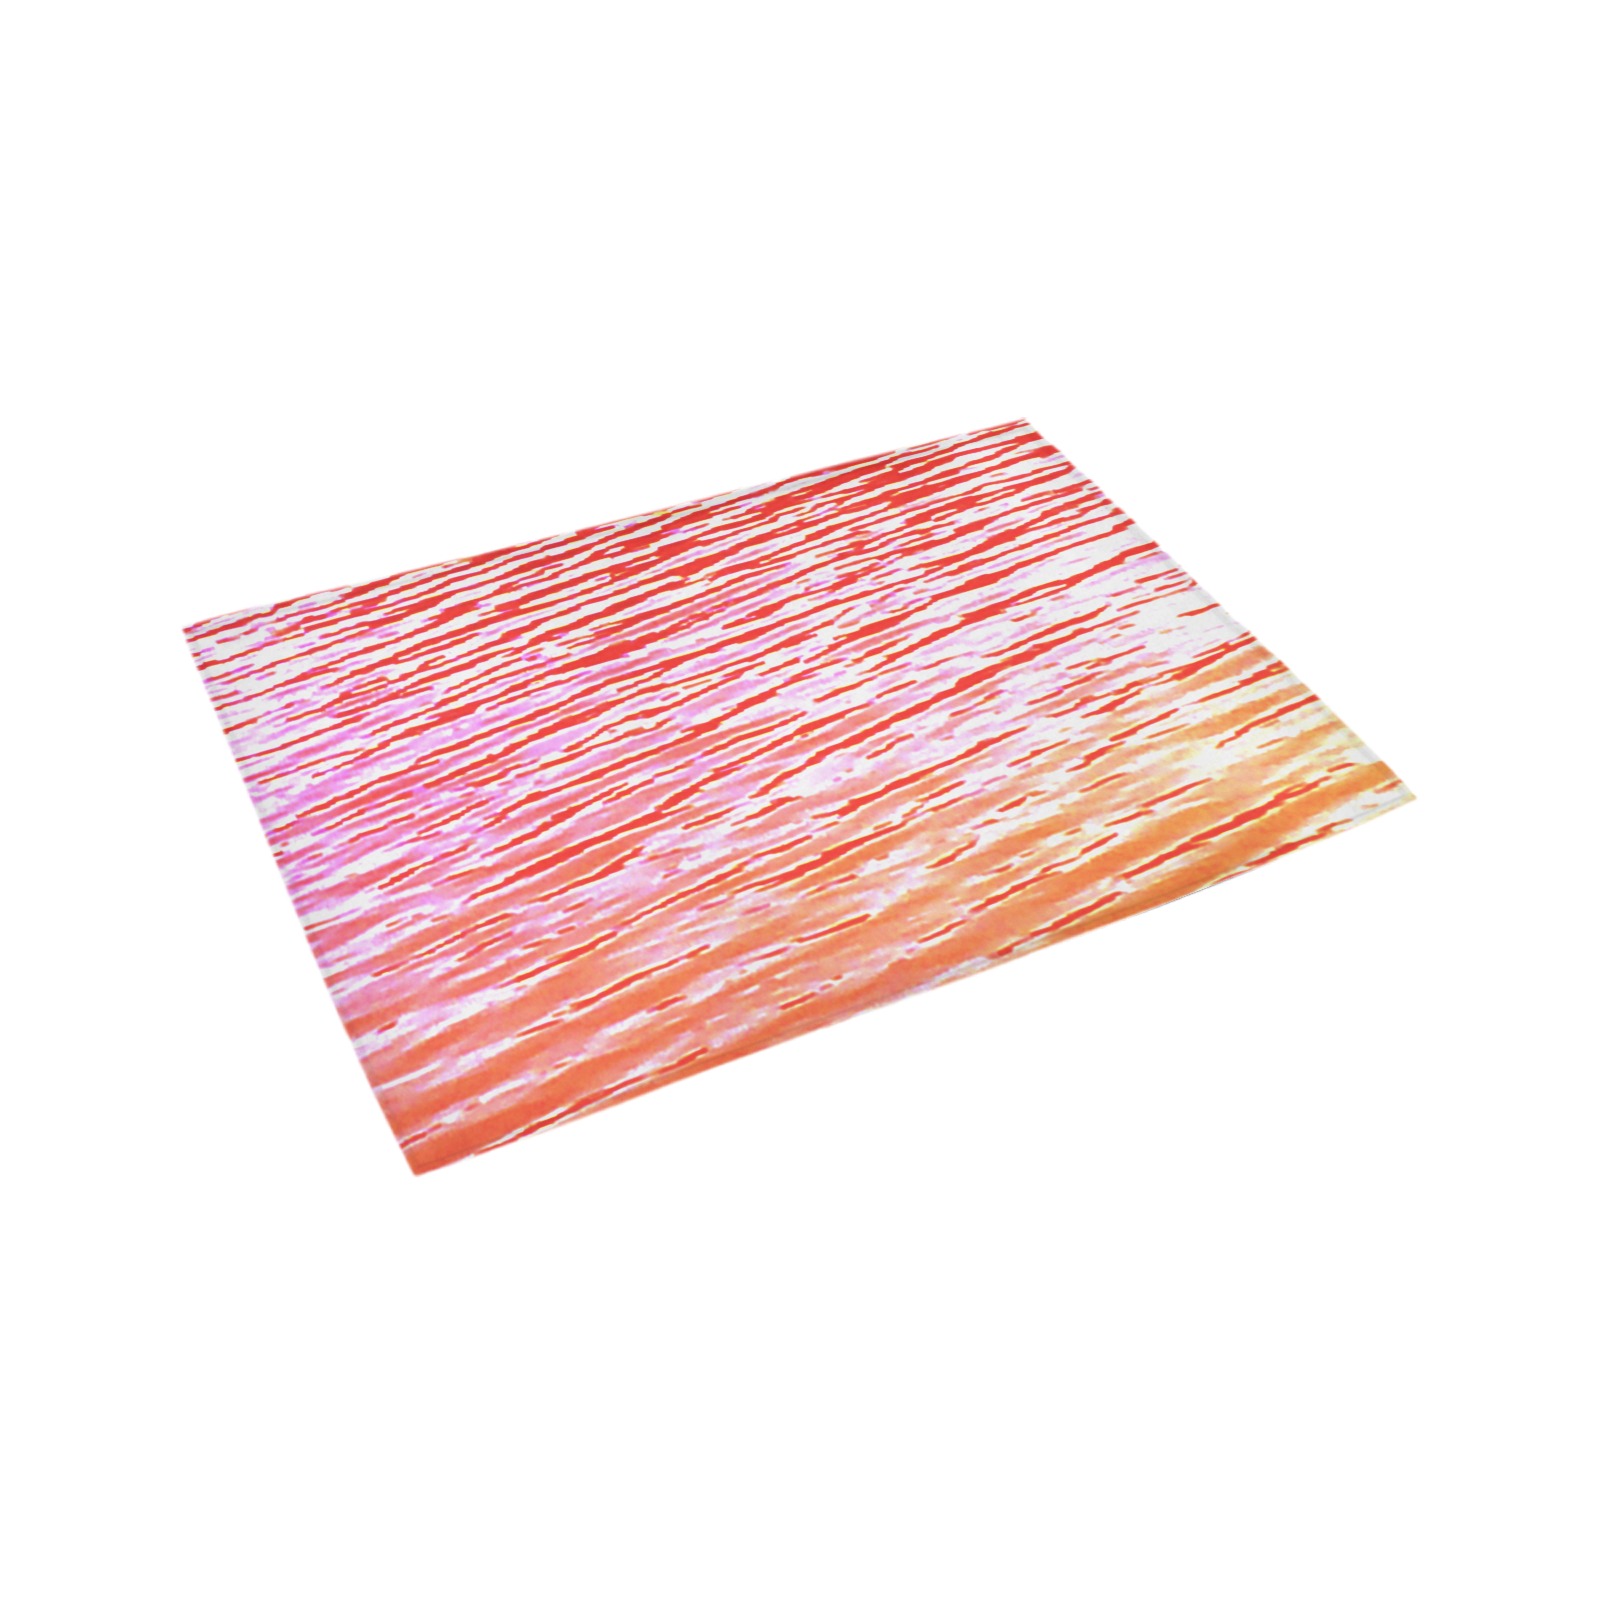 Orange and red water Azalea Doormat 24" x 16" (Sponge Material)